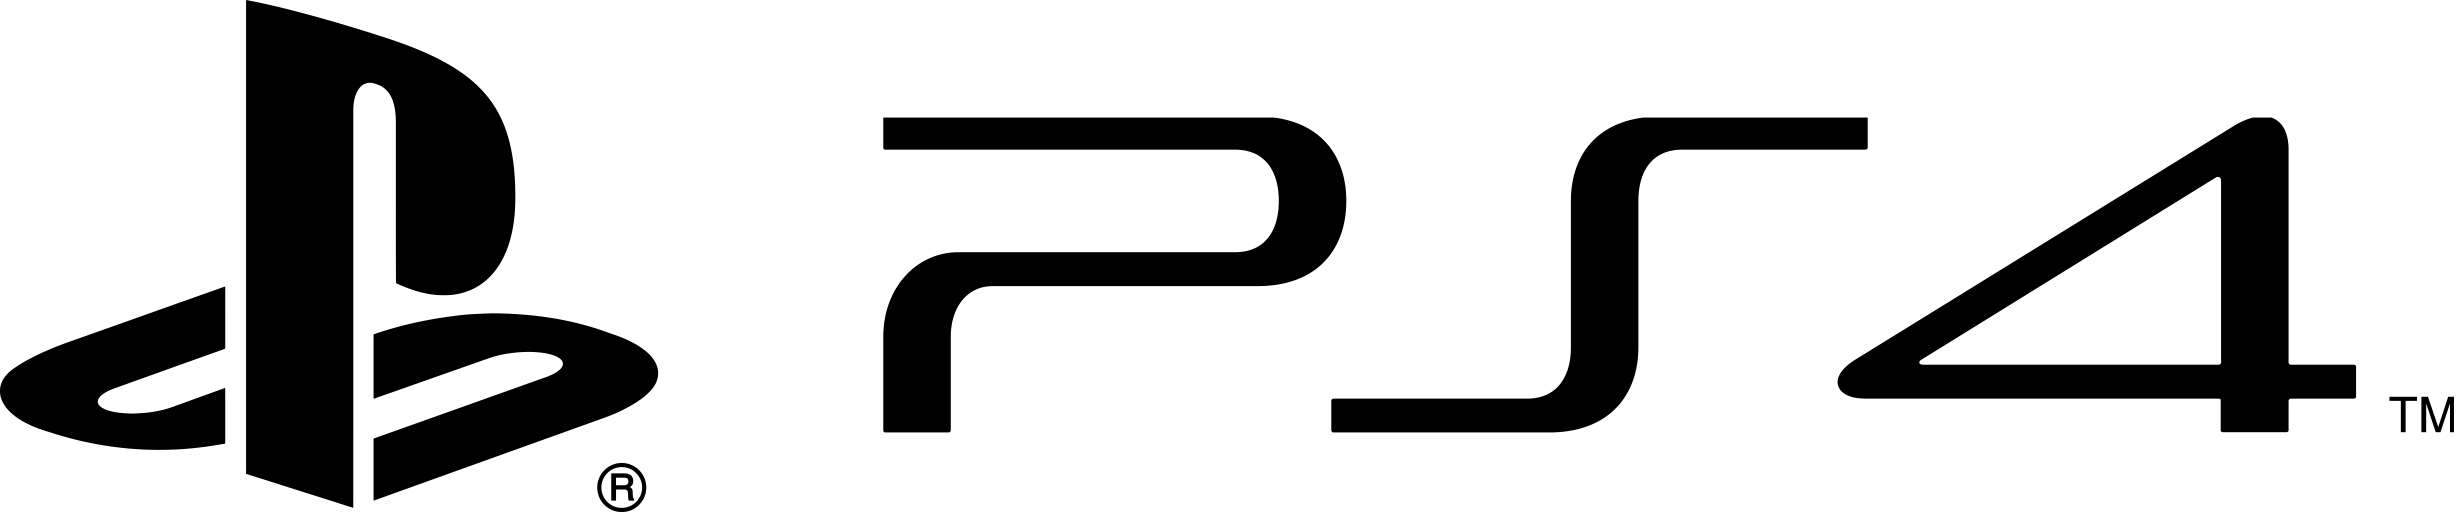 Playstation PNG - 171730